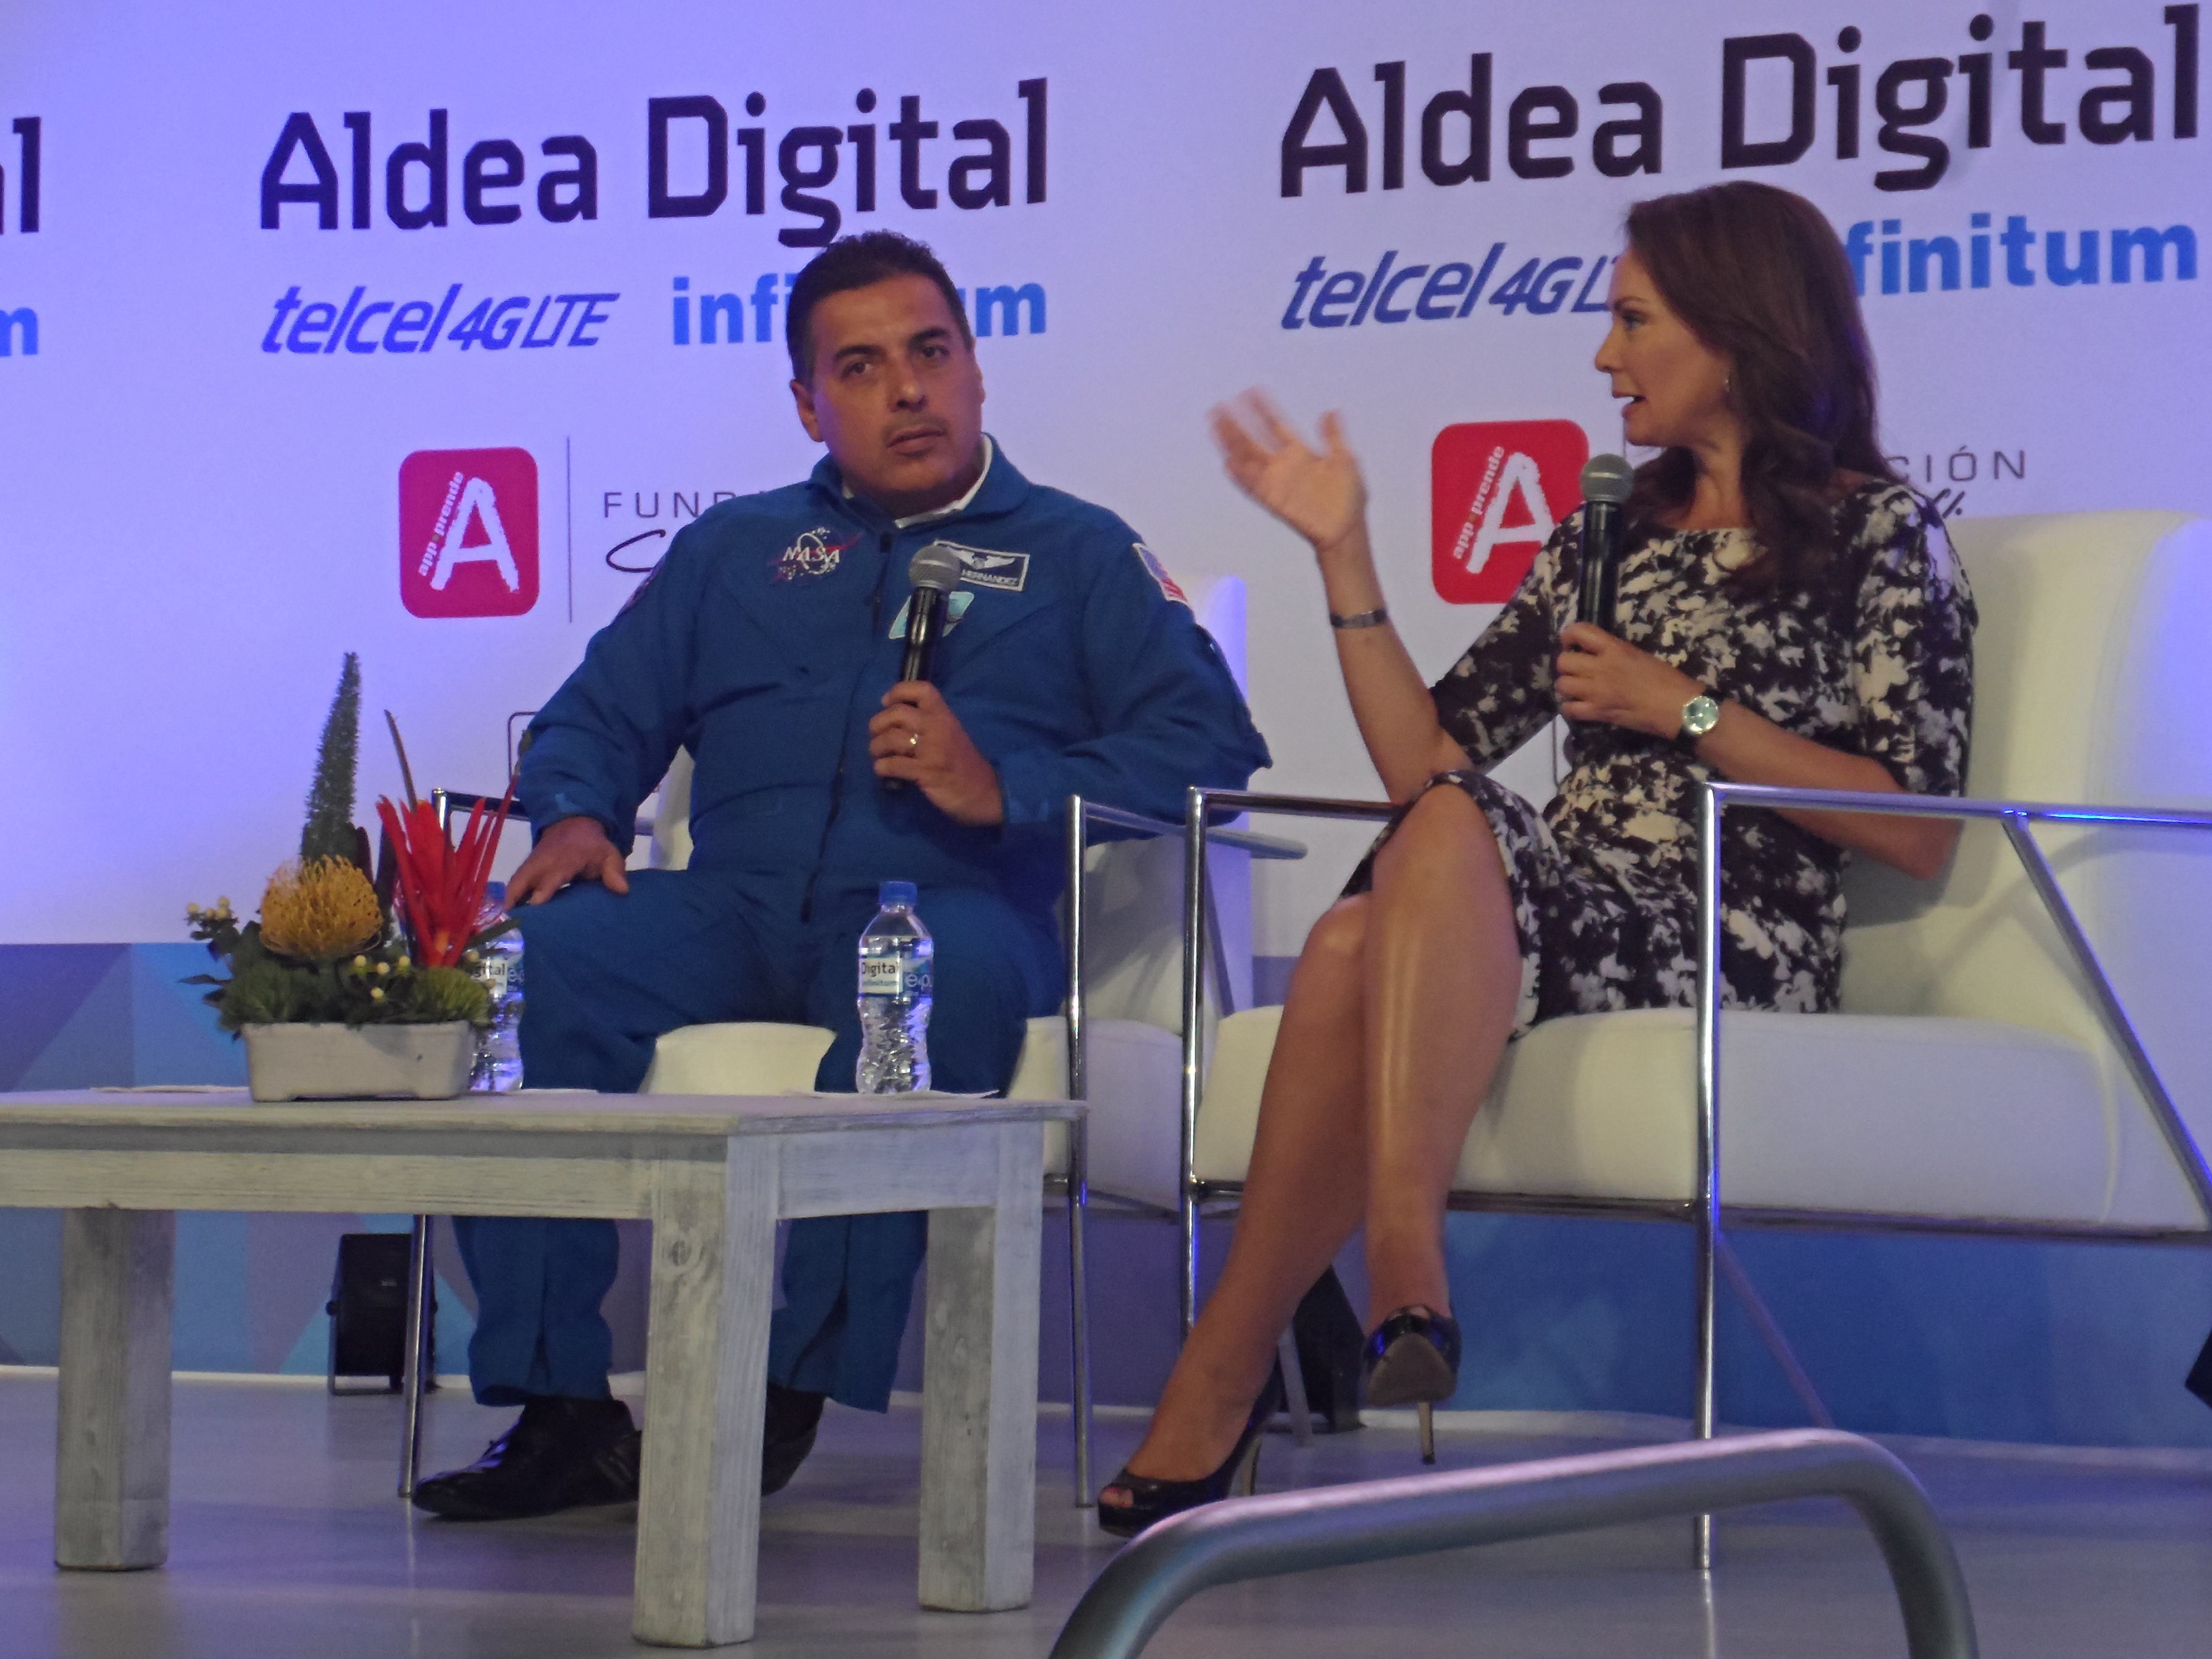 Aldea Digital 2016